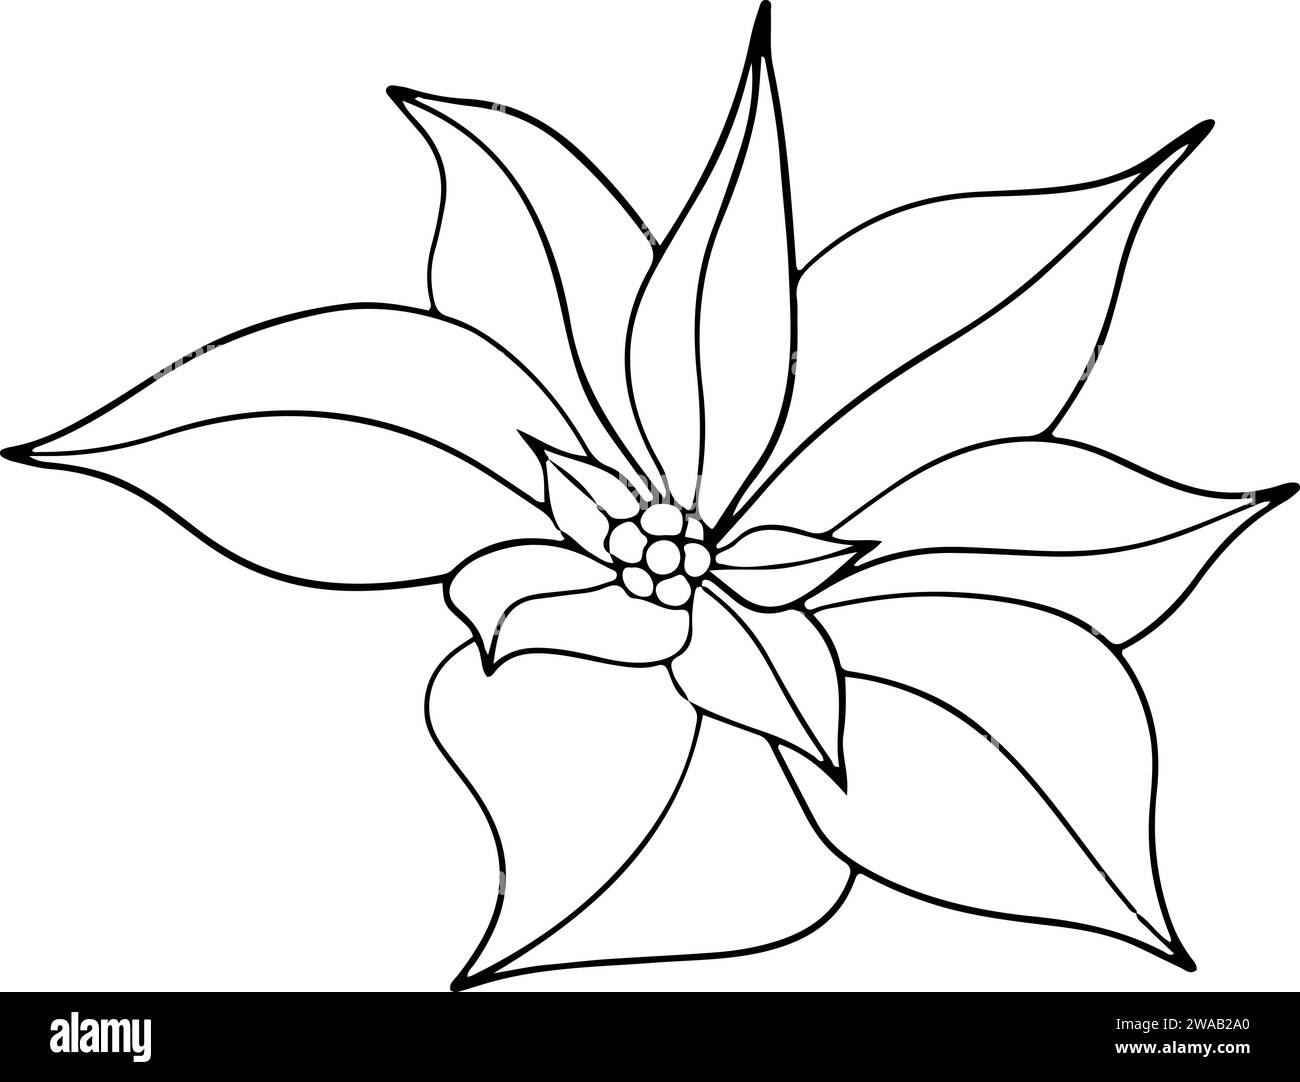 Fiori di Poinsettia, fiore di stella invernale. Elemento artistico della linea botanica. grafica dell'inchiostro. Illustrazione dipinta a mano per il saluto di Natale o Capodanno Illustrazione Vettoriale